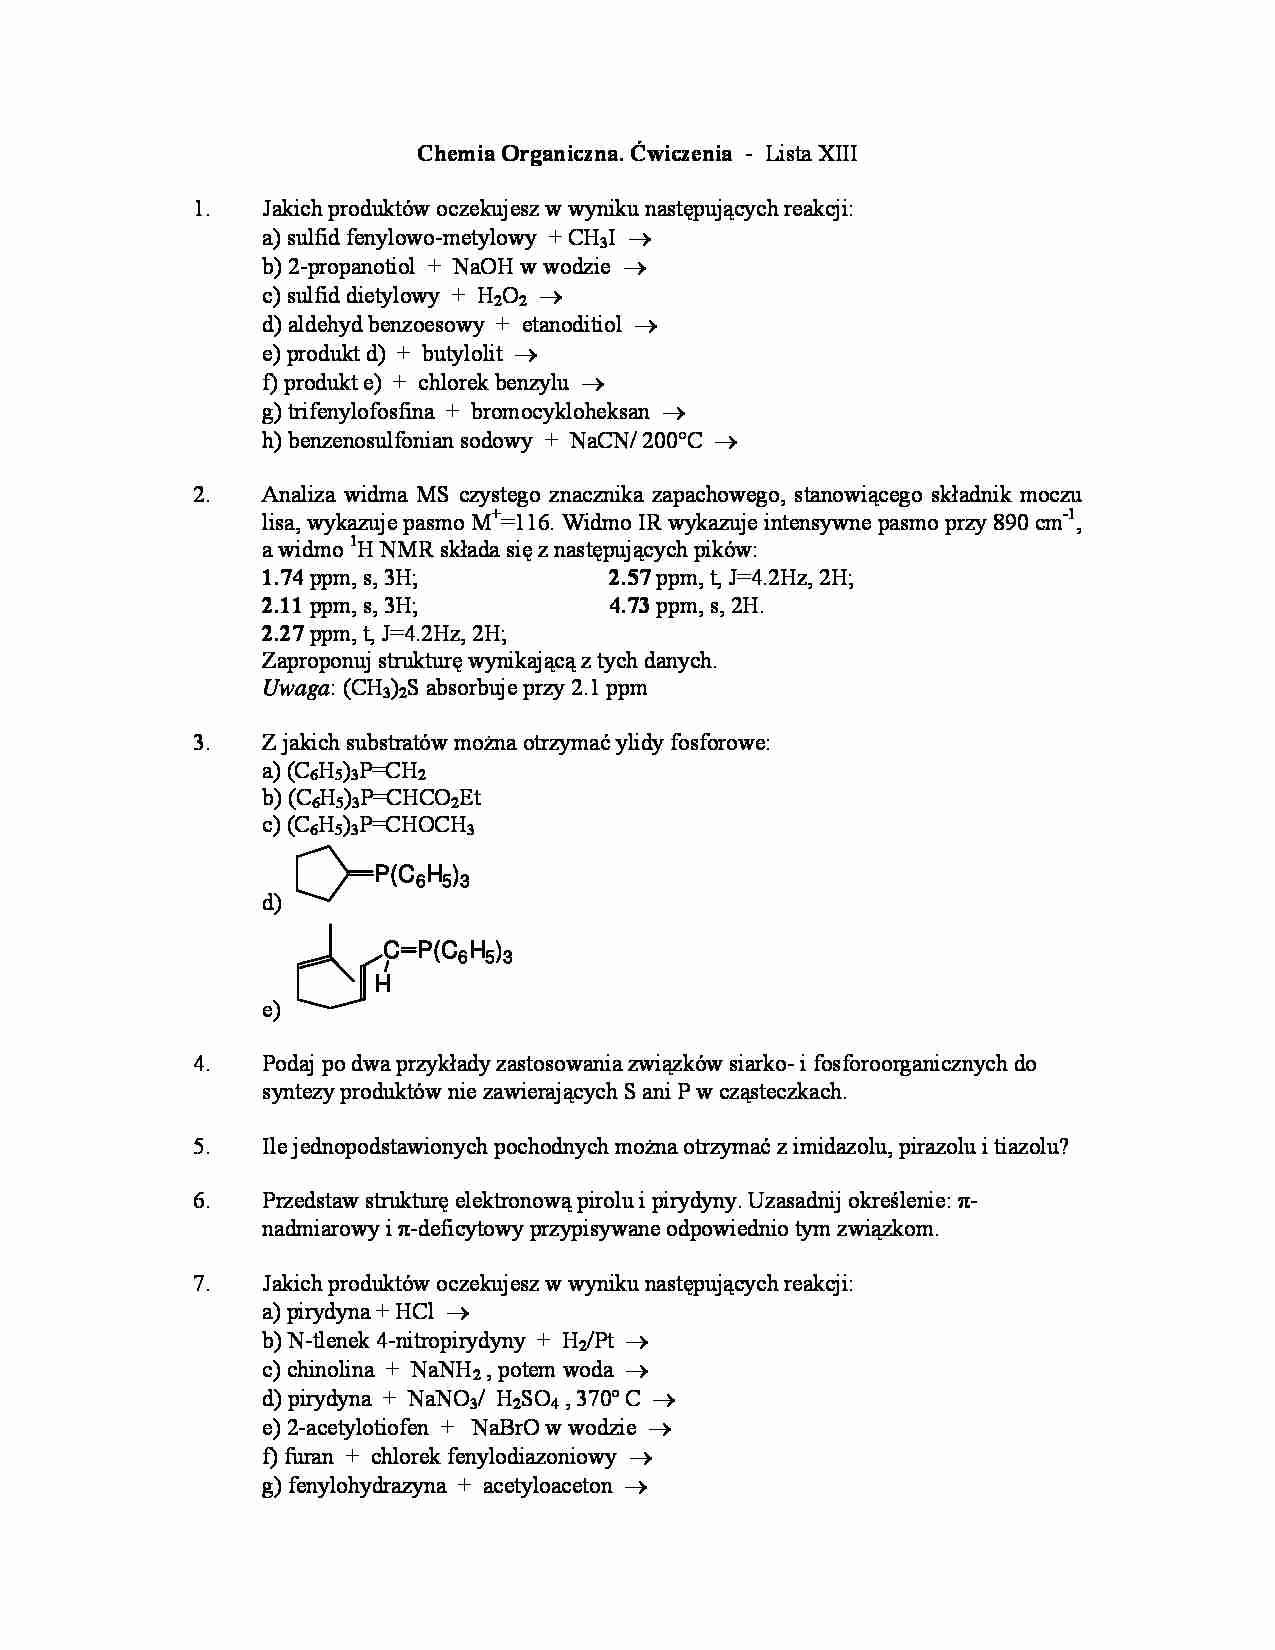 Chemia organiczna - ćwiczenia, lista XIII - strona 1